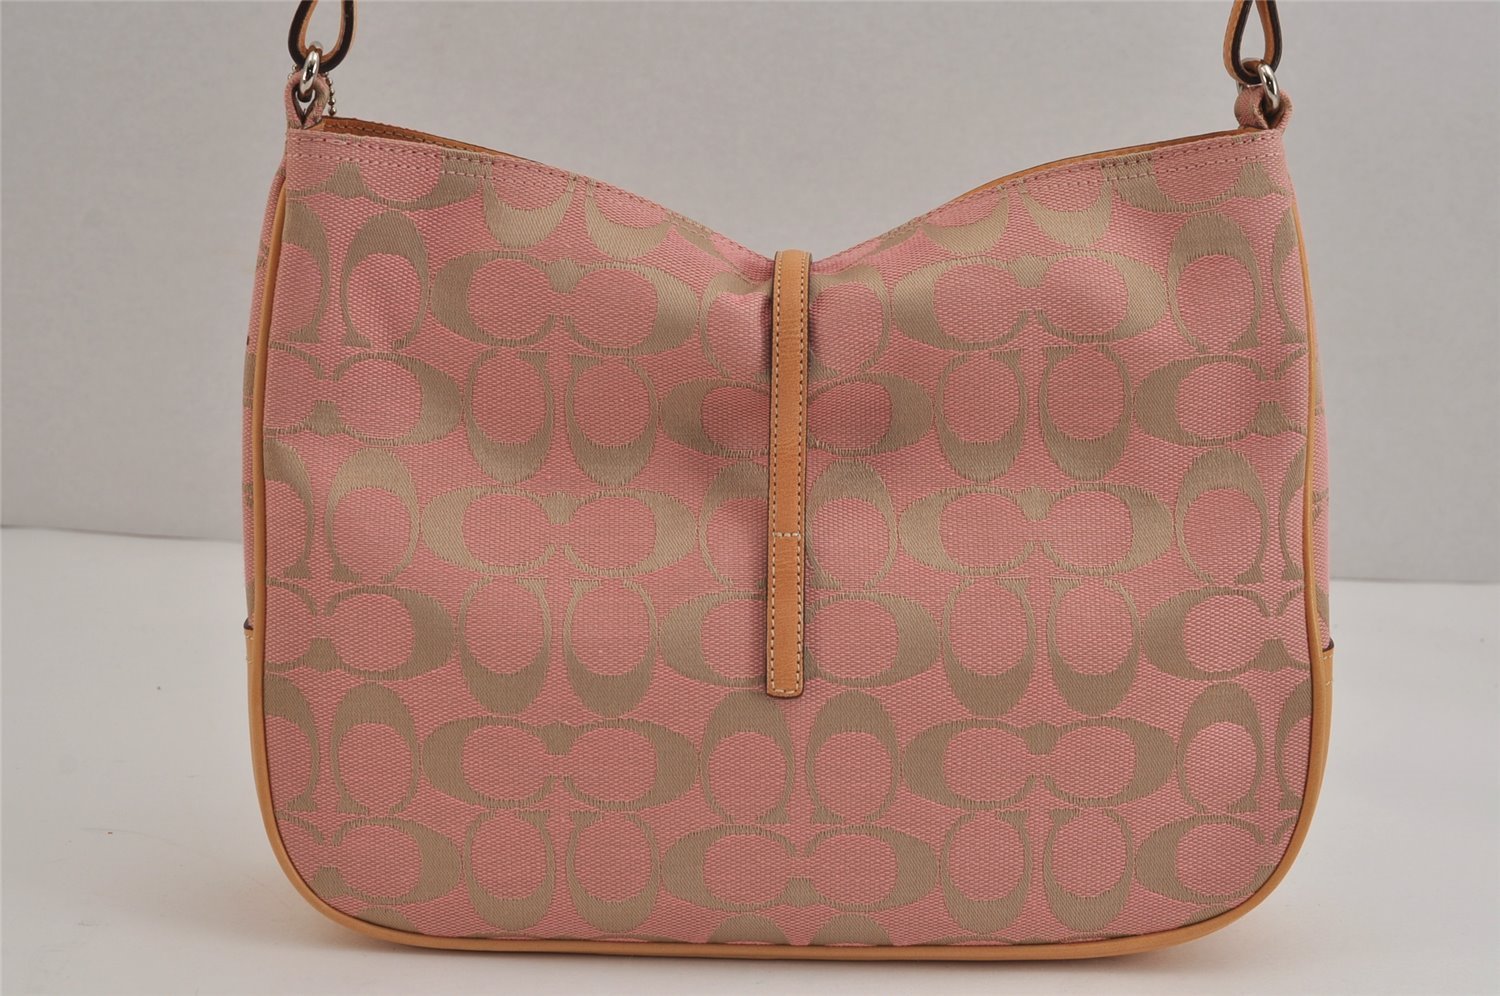 Authentic COACH Signature Shoulder Hand Bag Purse Canvas Leather 6091 Pink 4950J